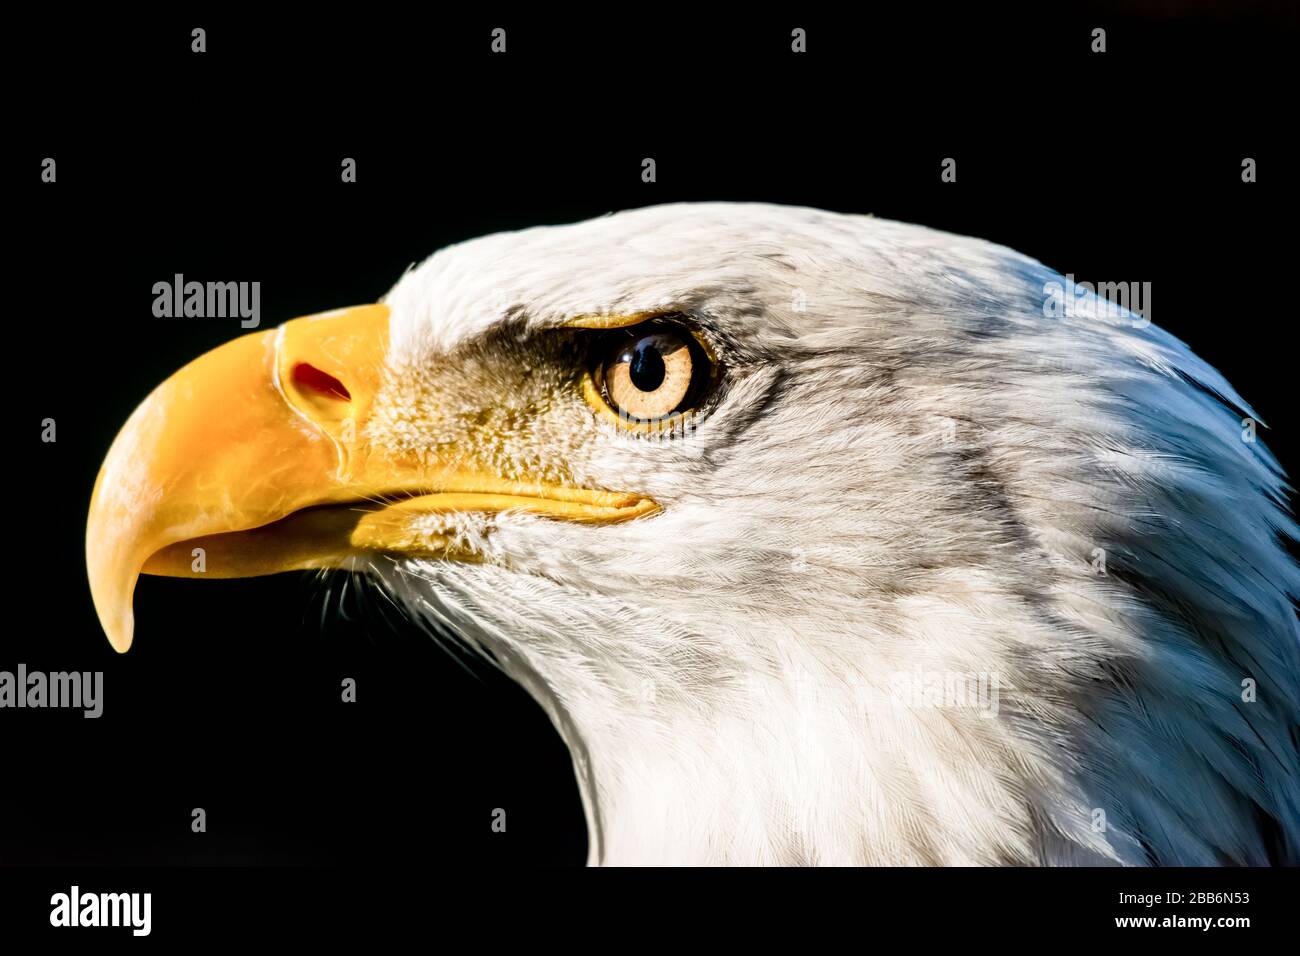 Close-up of a bald eagle, Canada Stock Photo